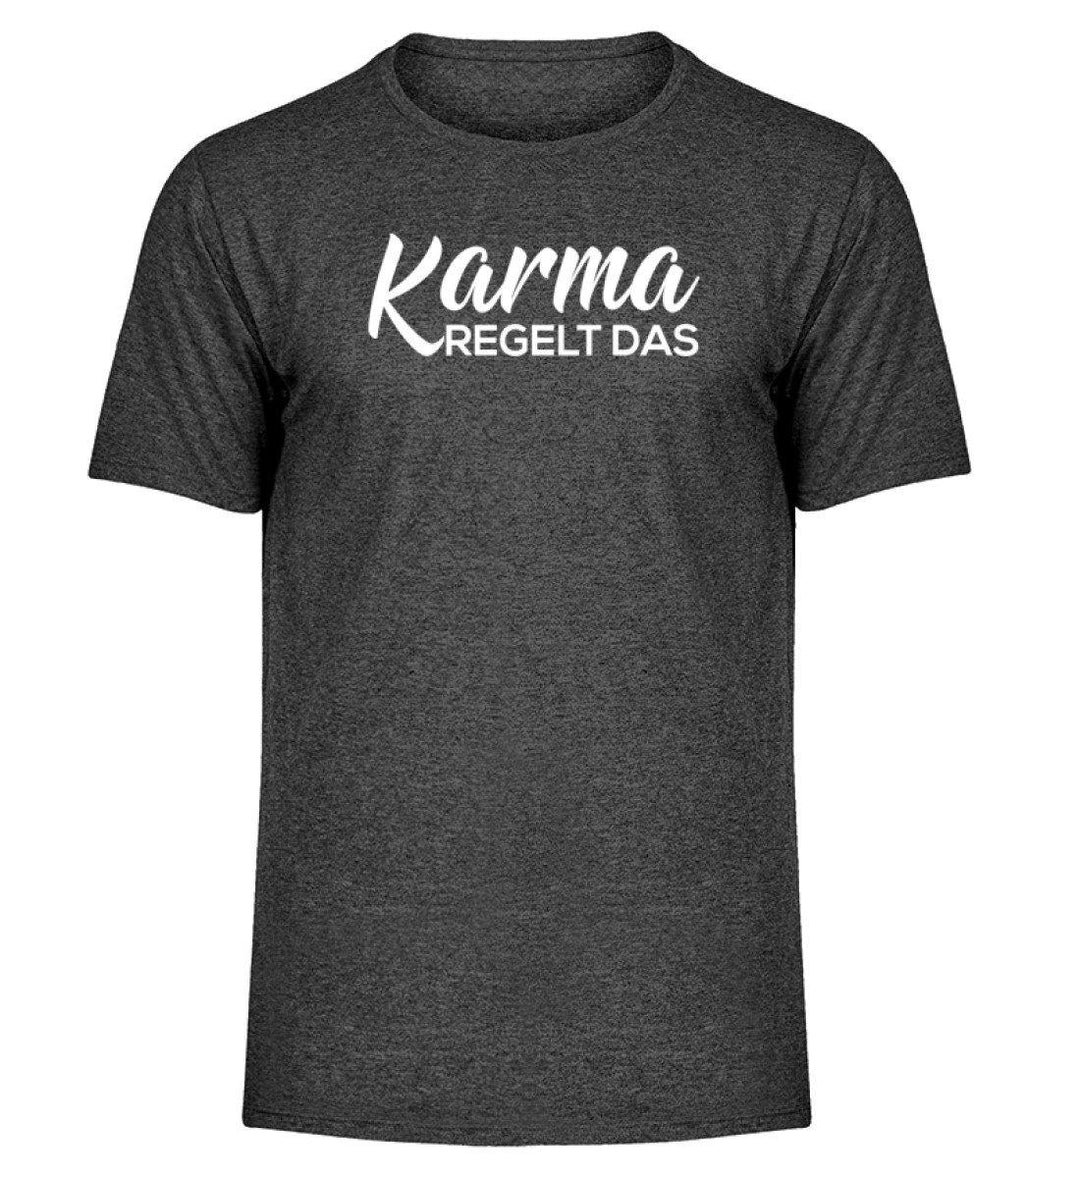 Karma regelt das-  Words on Shirts - PR  - Herren Melange Shirt - Words on Shirts Sag es mit dem Mittelfinger Shirts Hoodies Sweatshirt Taschen Gymsack Spruch Sprüche Statement